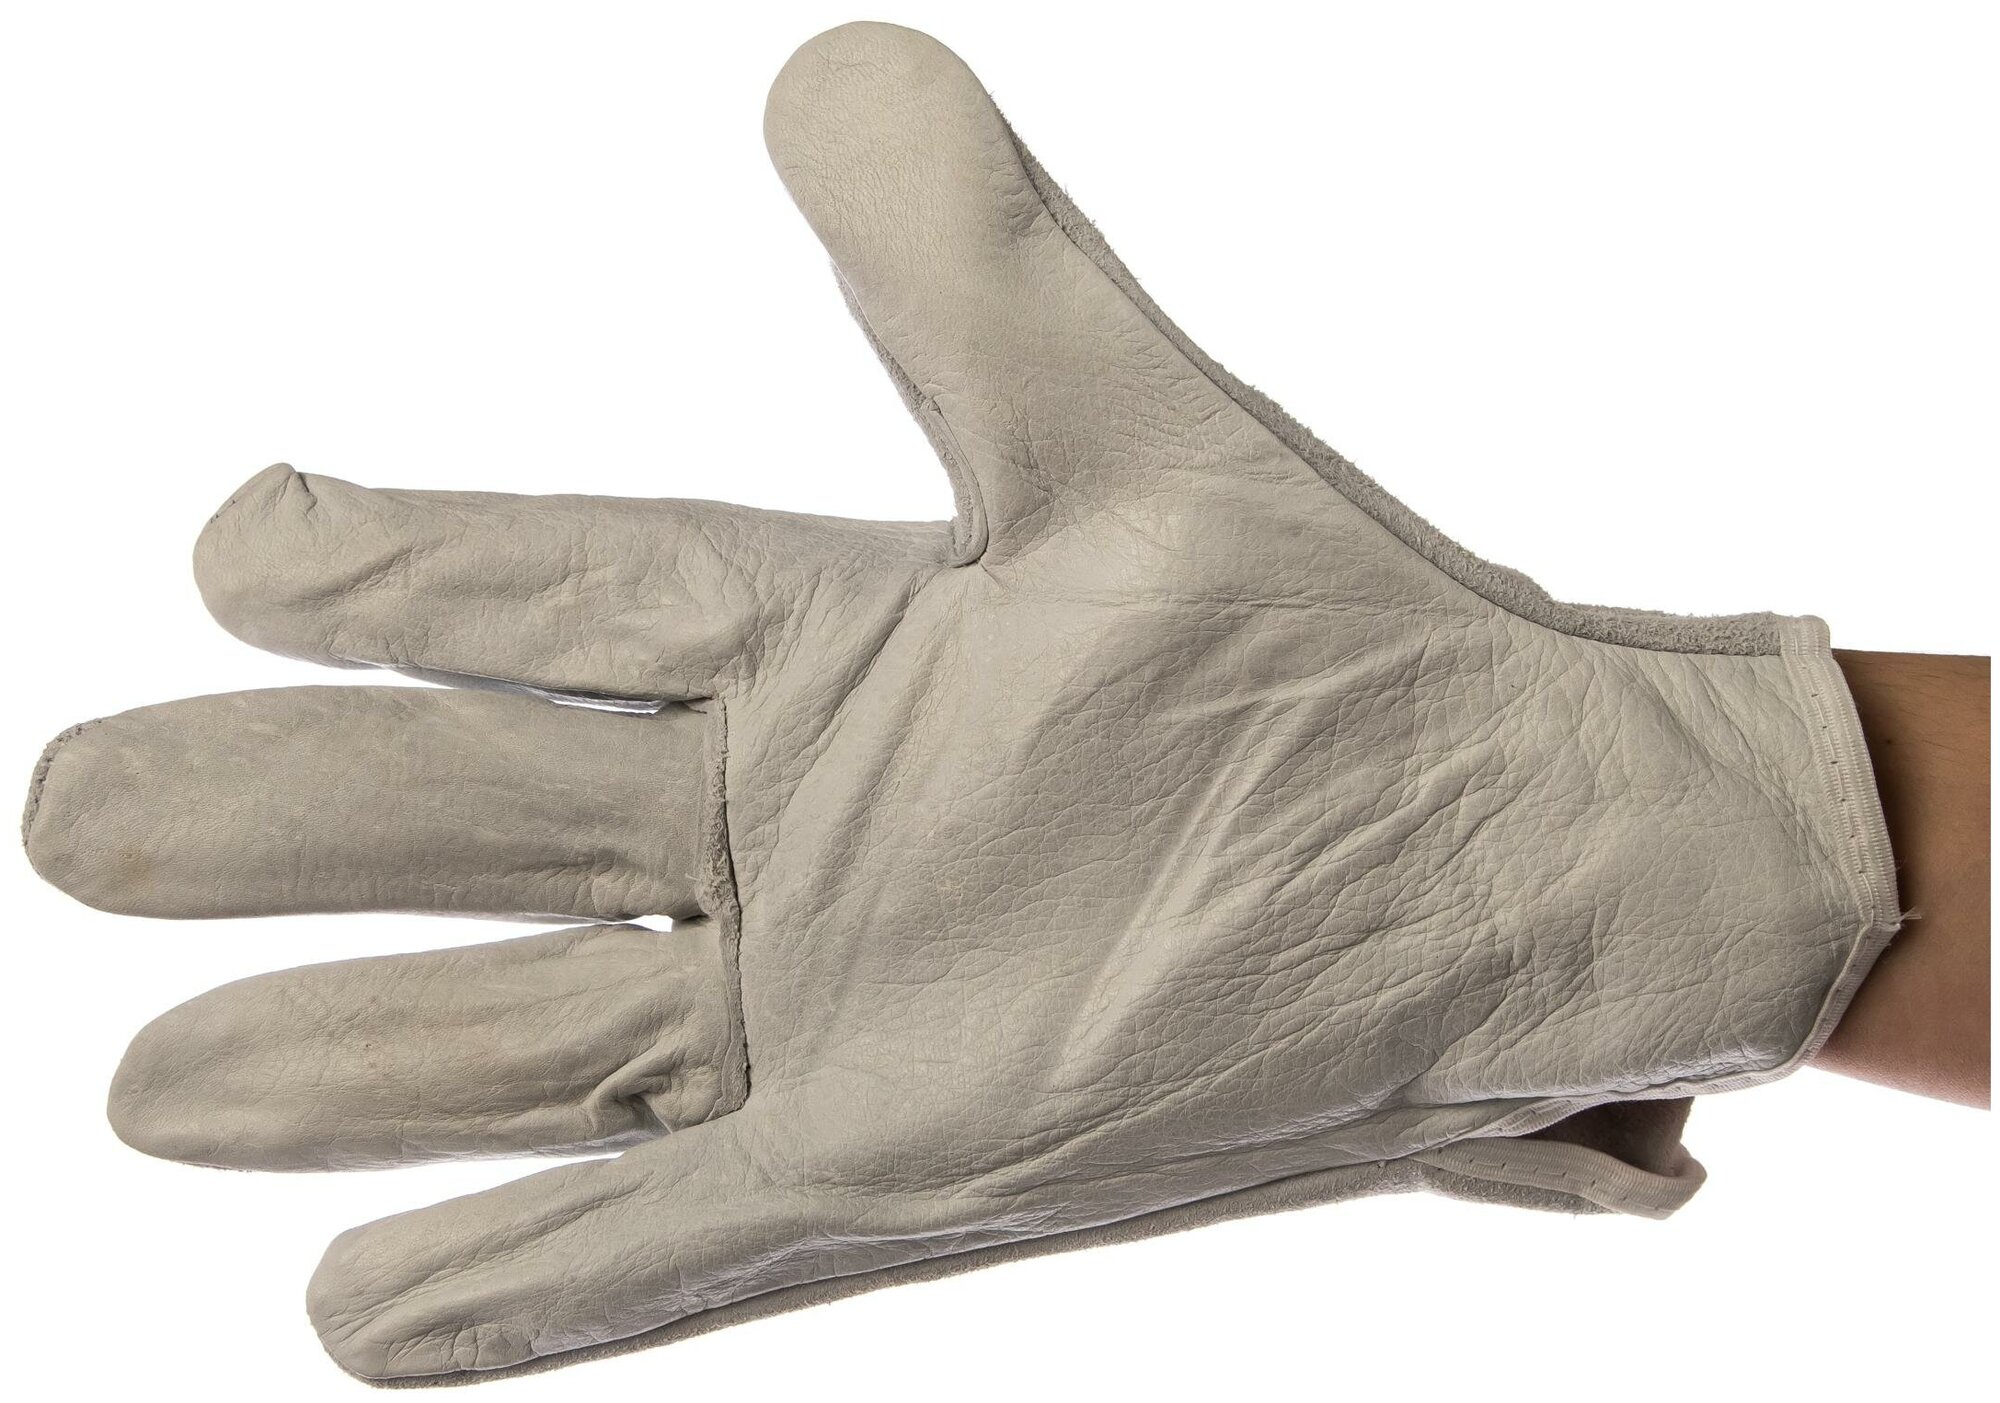 Перчатки защитные Delta Plus натуральная воловья кожа, бежевые, р.11 (FCN2911)